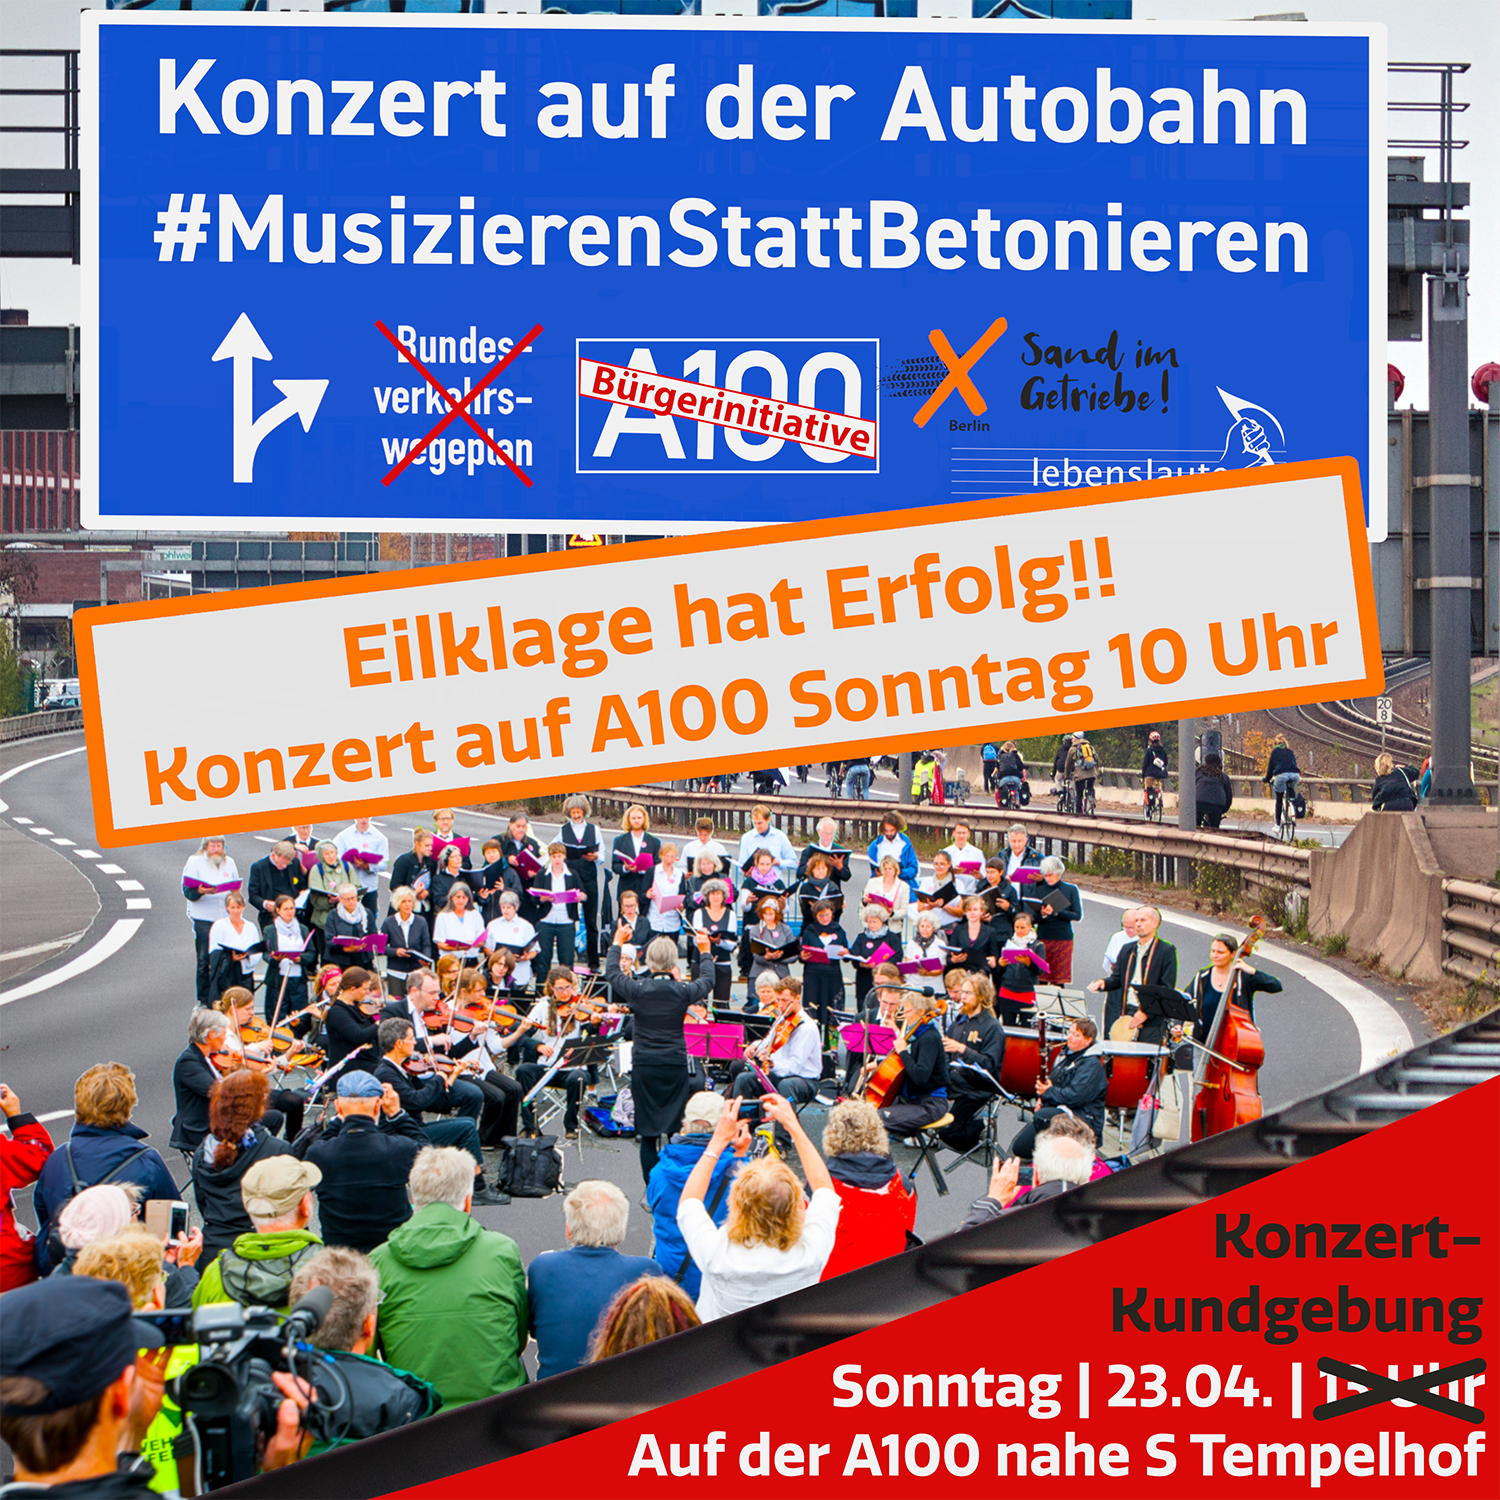 Protestkonzert auf der A100 am 23.4. um 10 Uhr in Berlin